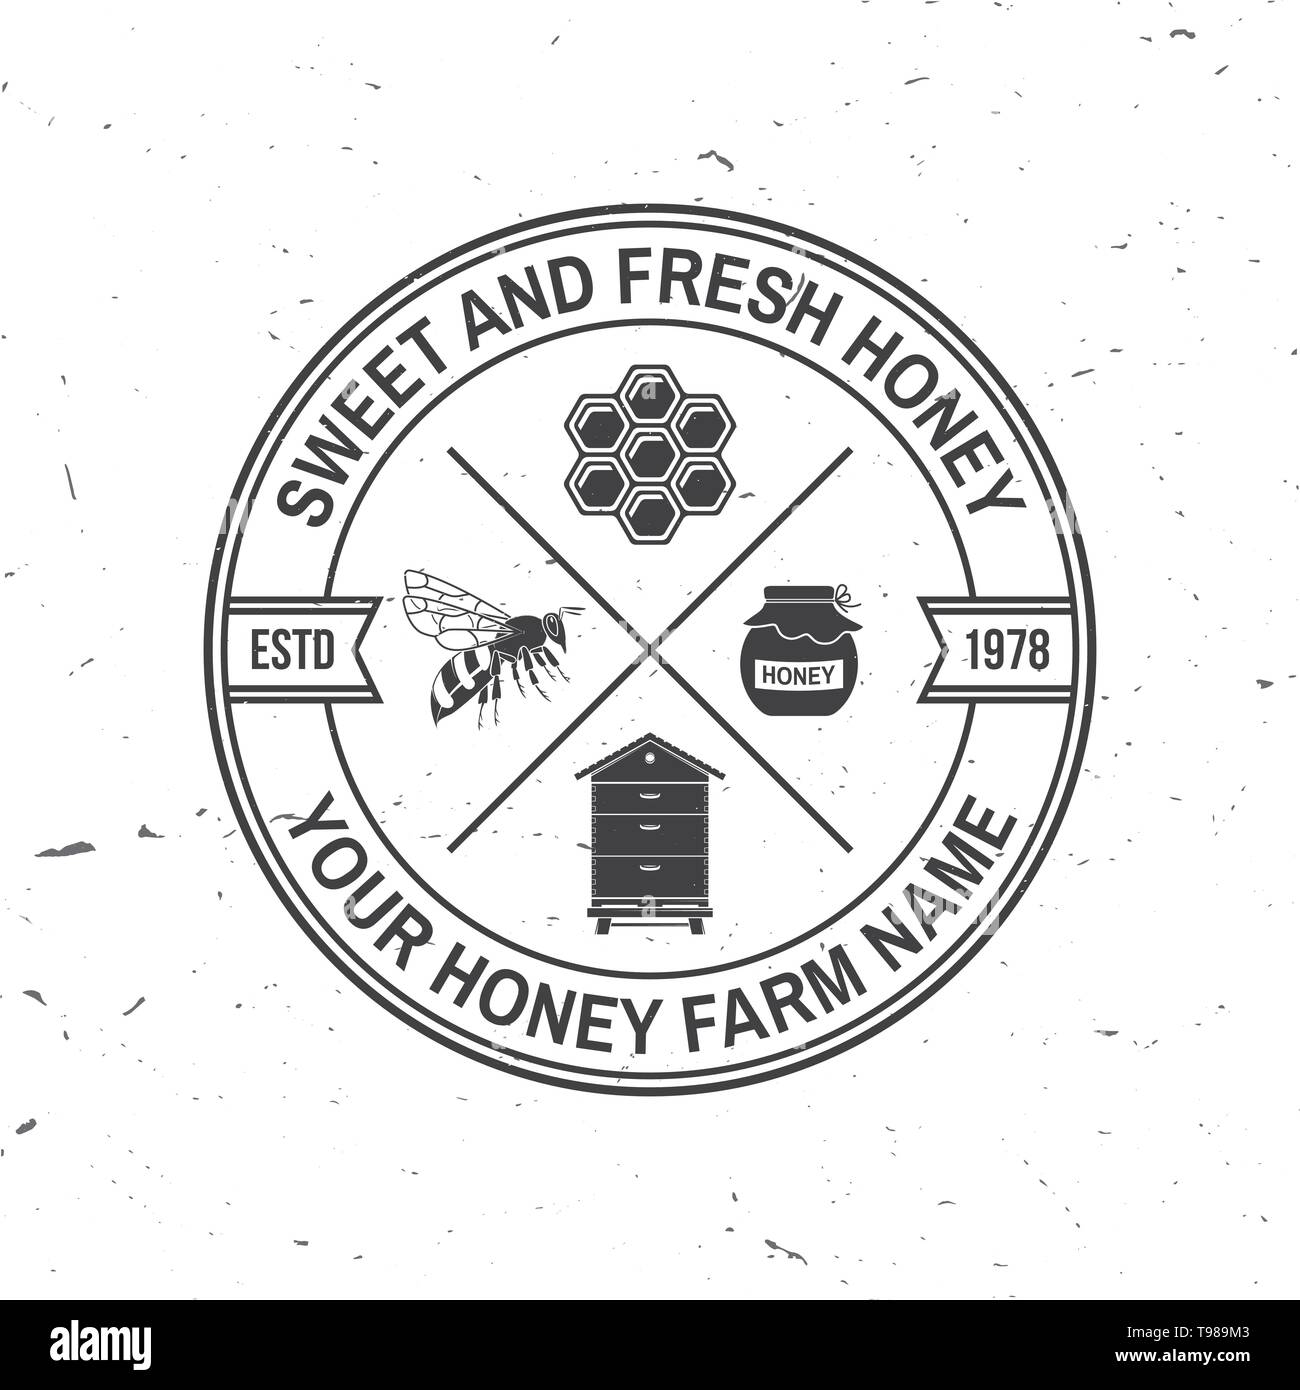 Honey Farm Abzeichen. Vector Illustration. Konzept für T-Shirt, Druck, Stempel oder T-Stück. Vintage Typografie Design mit Biene, Bienenkorb und Honig Pendelarm Silhouette. Retro Design für Honey Bee Farm Business Stock Vektor